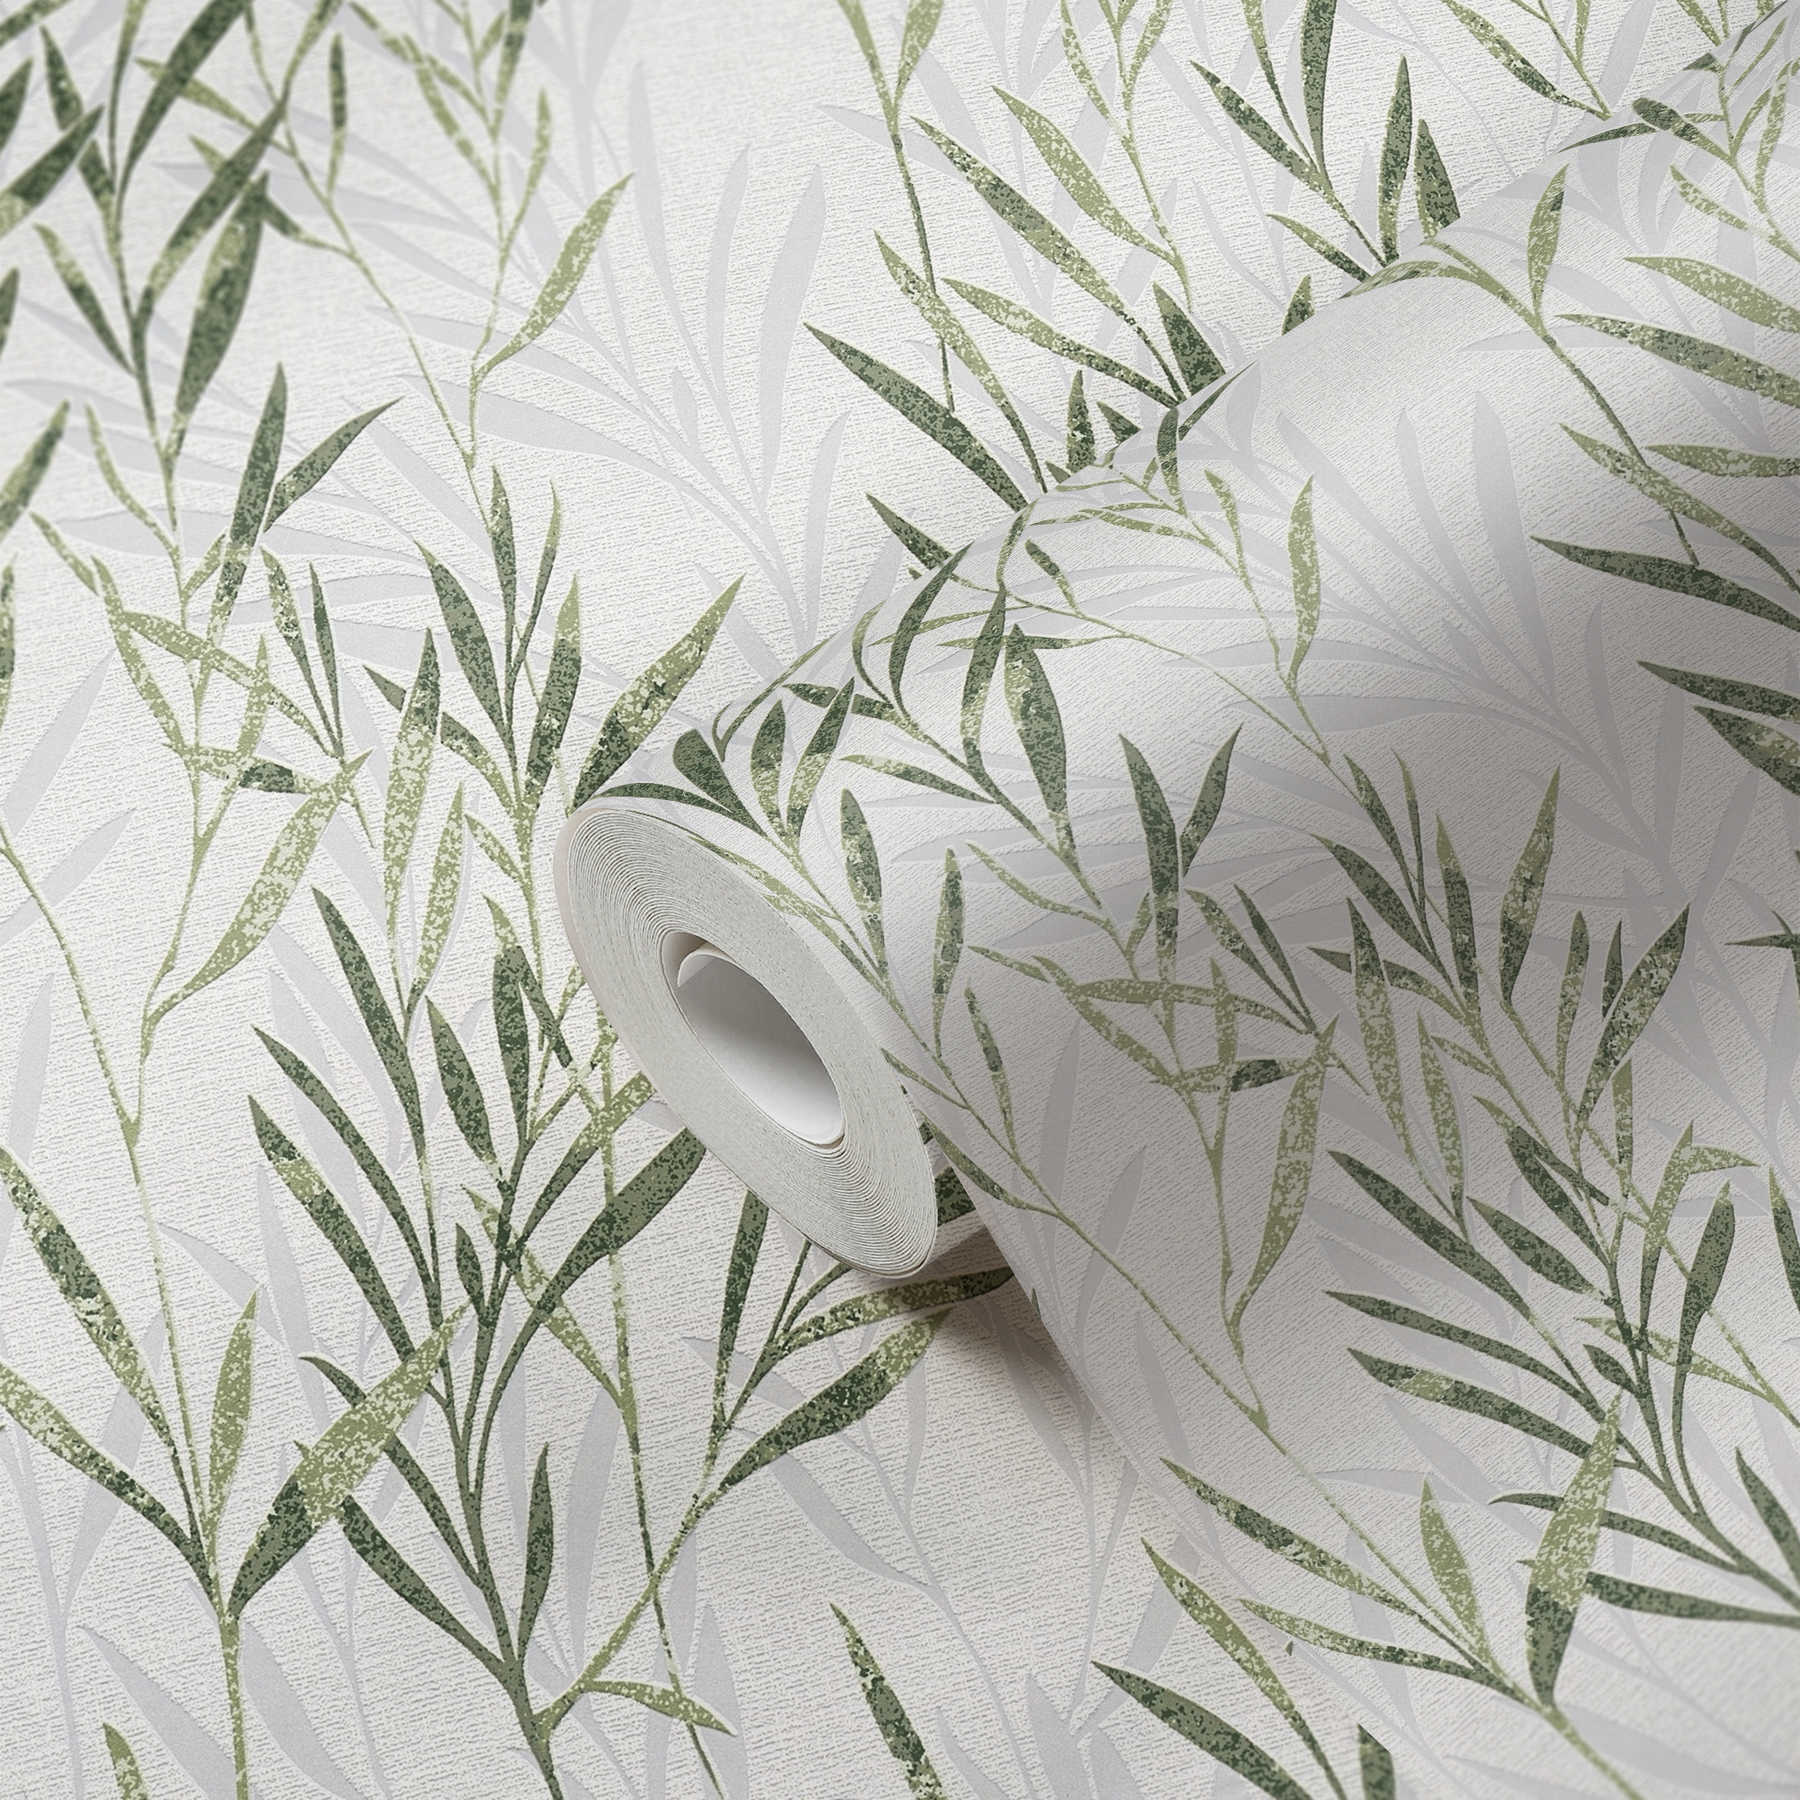             Vliesbehang bladmotief & rankenpatroon - groen, wit
        